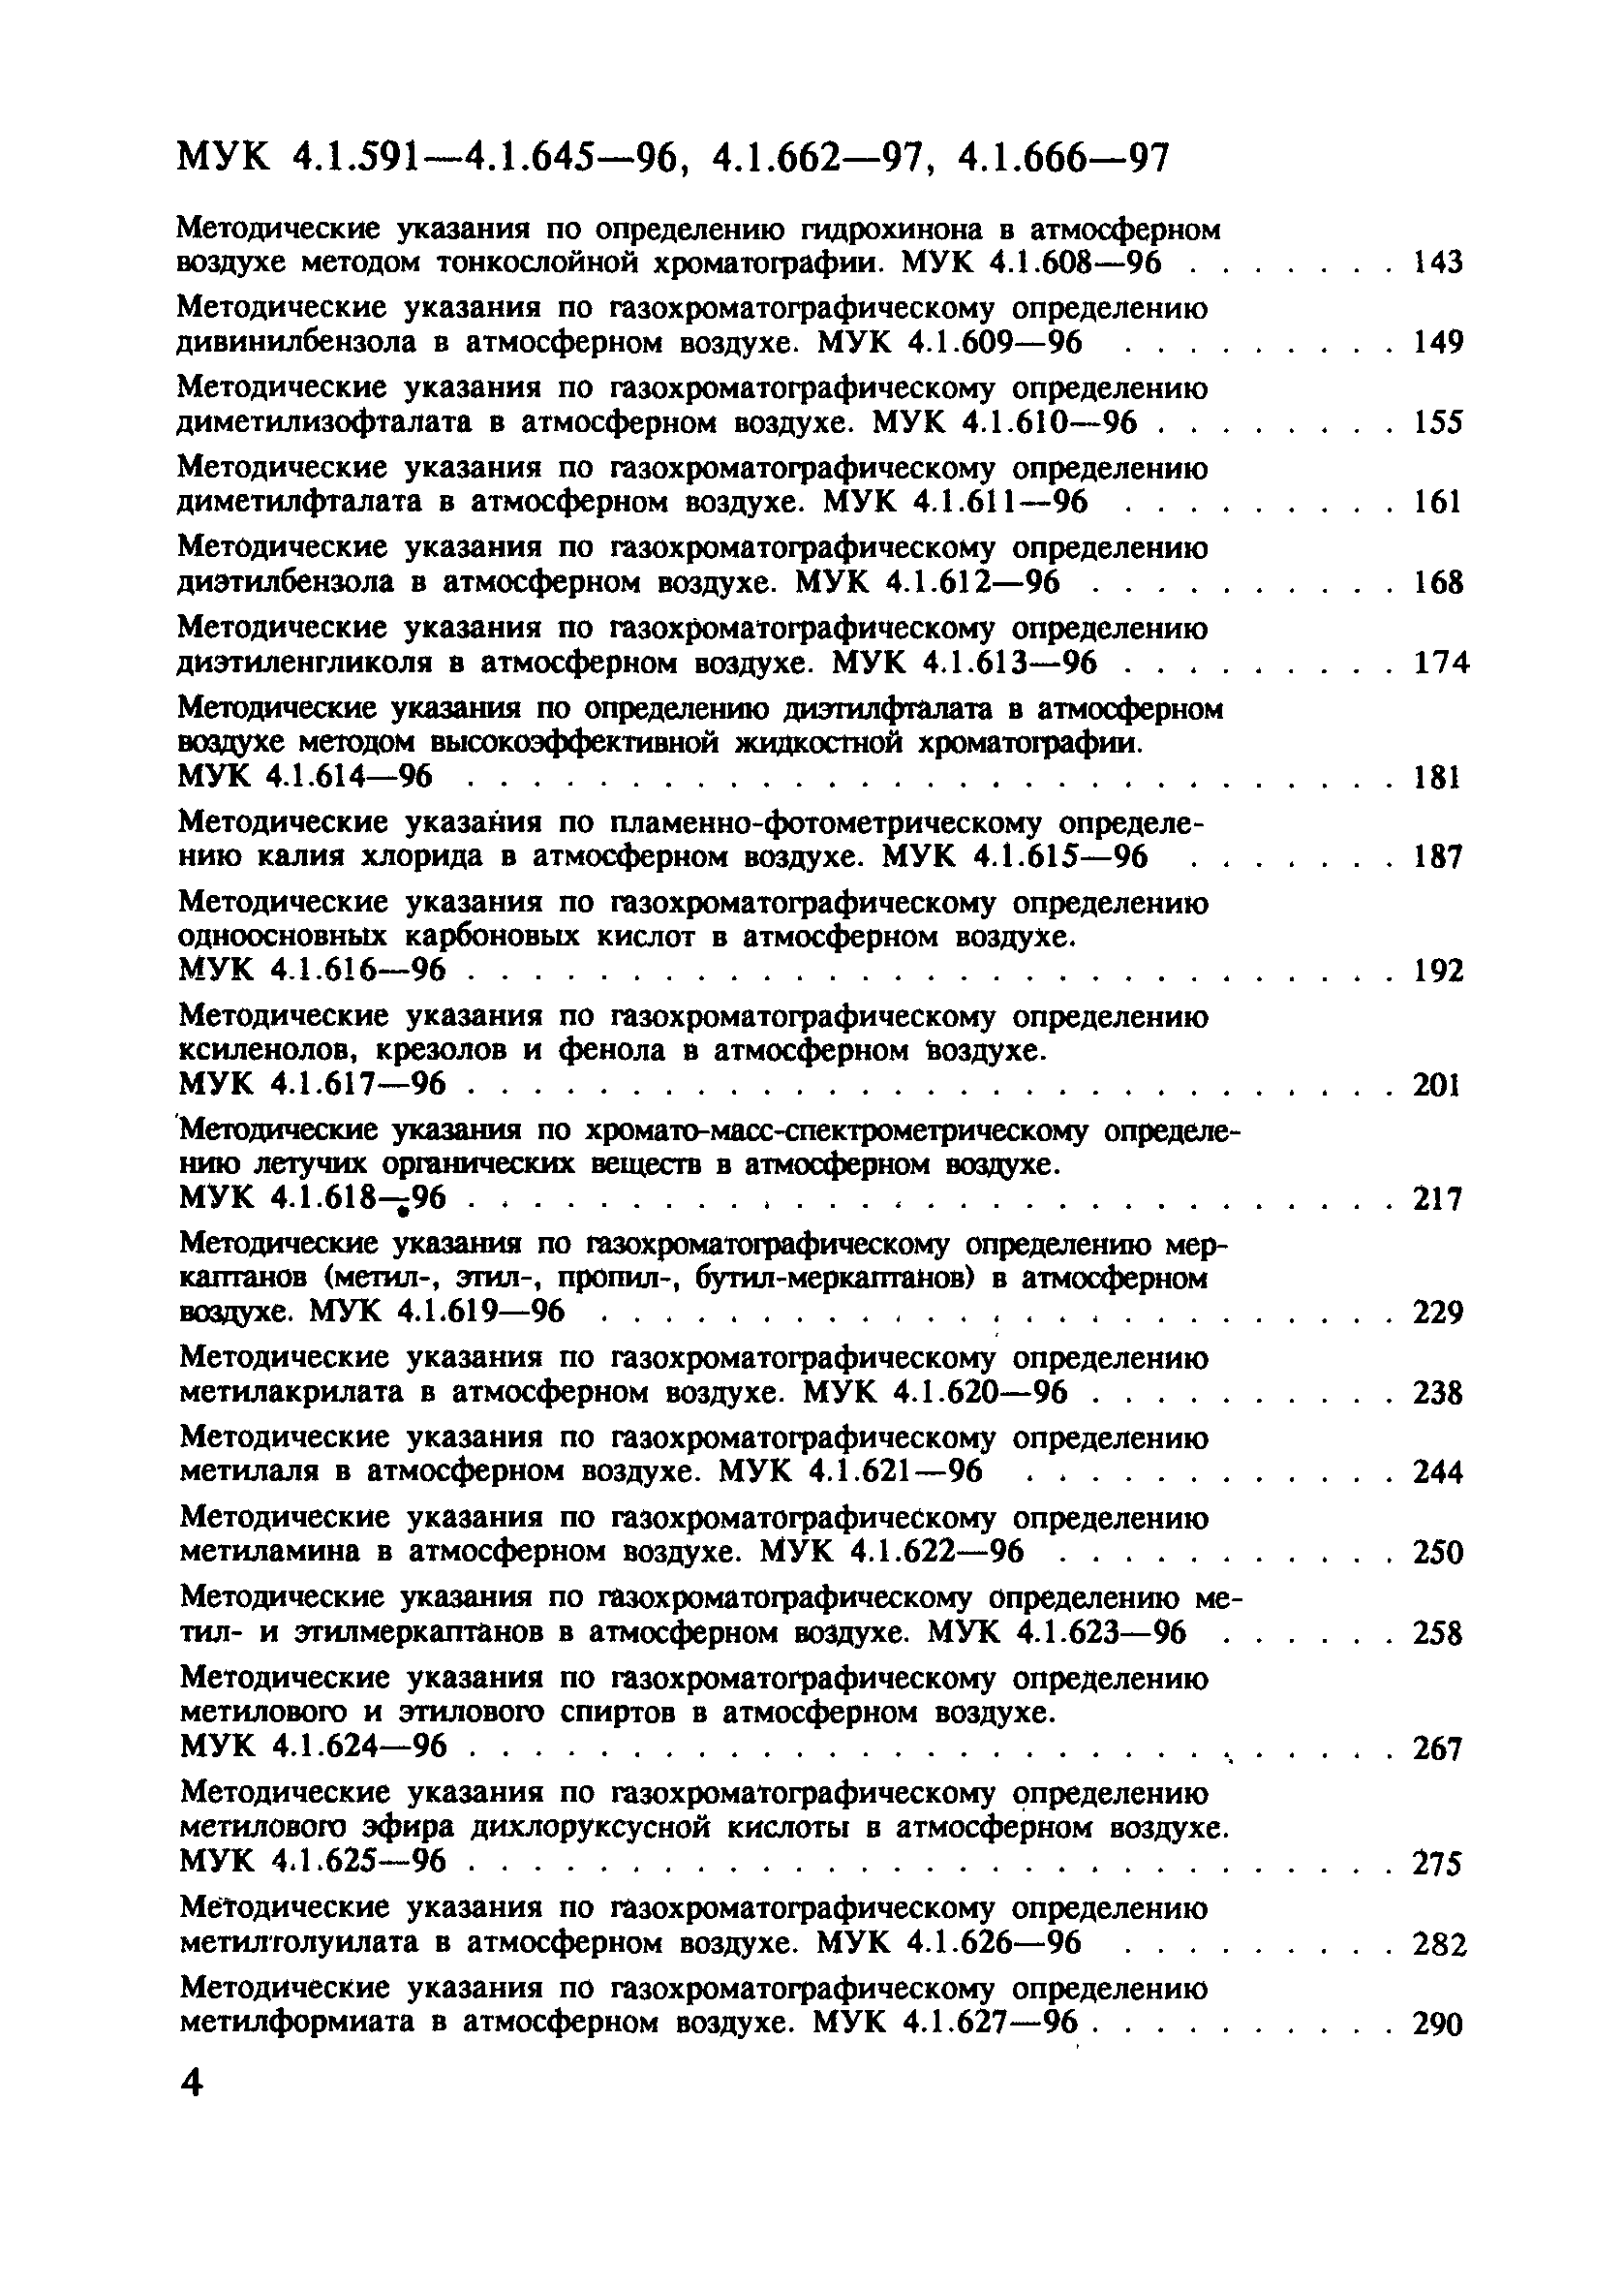 МУК 4.1.633-96